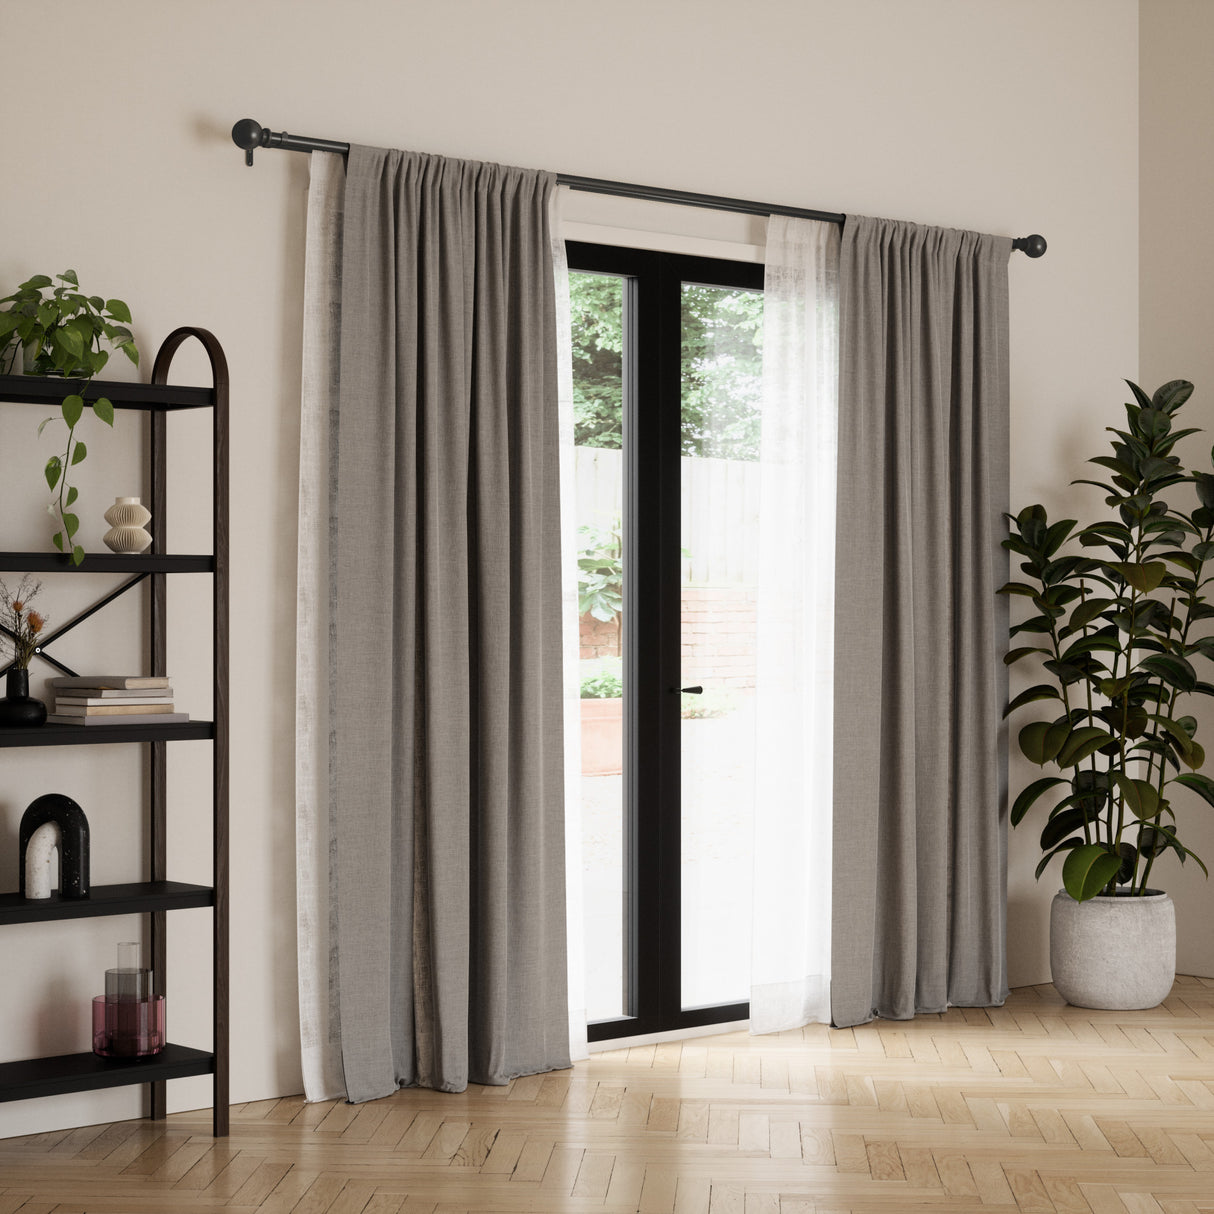 Double Curtain Rods | color: Matte-Black | size: 72-144" (183-366 cm) | diameter: 1" (2.5 cm)